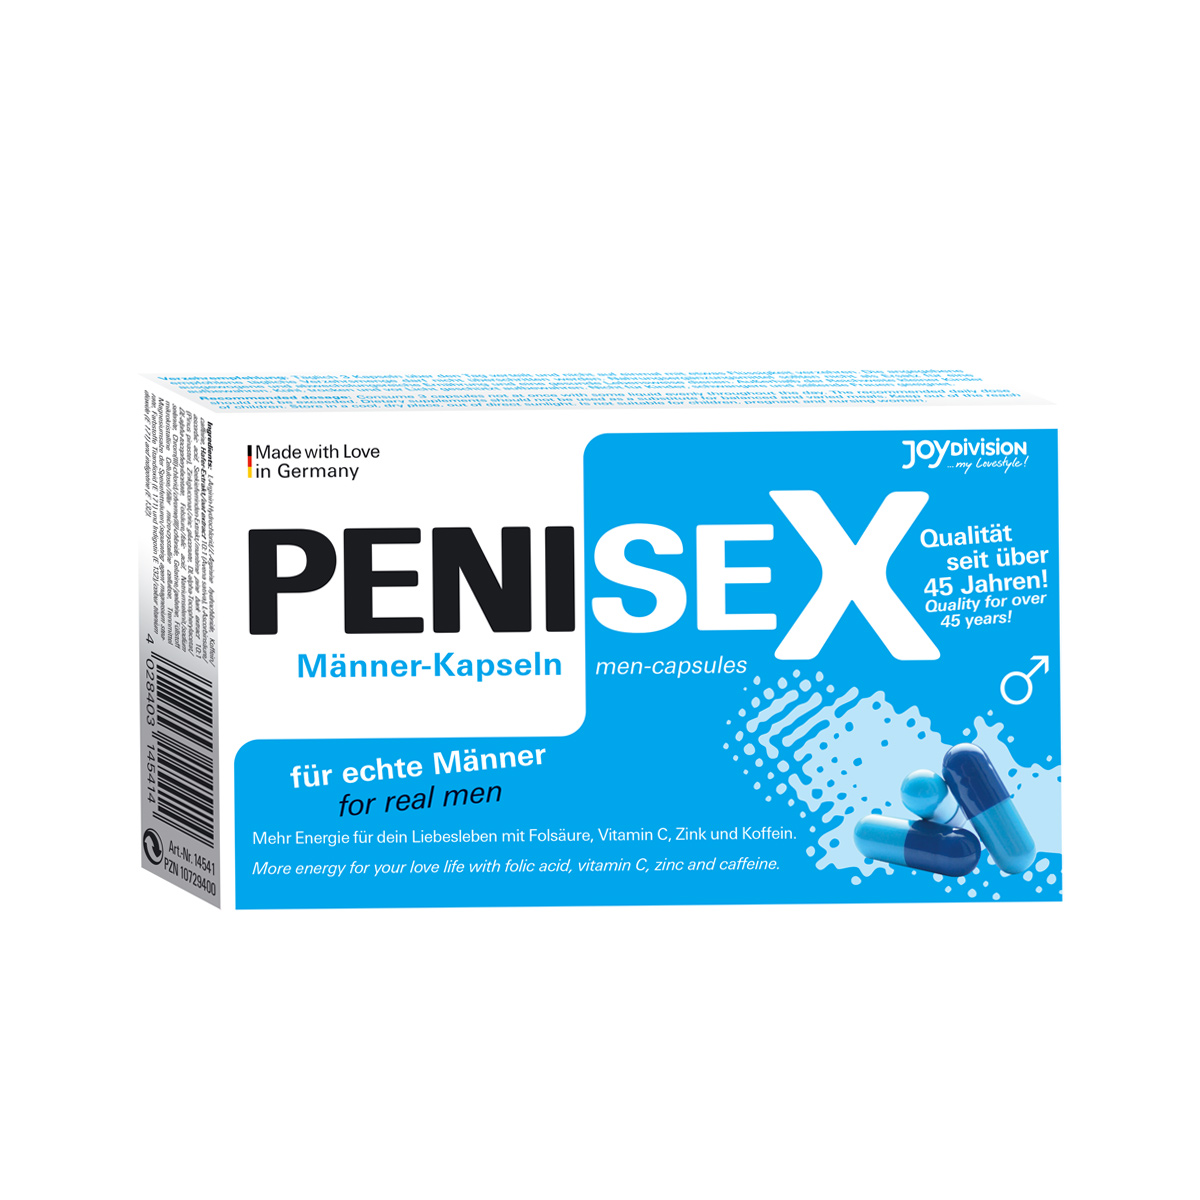 PENISEX – Men-capsules 40 Capsules